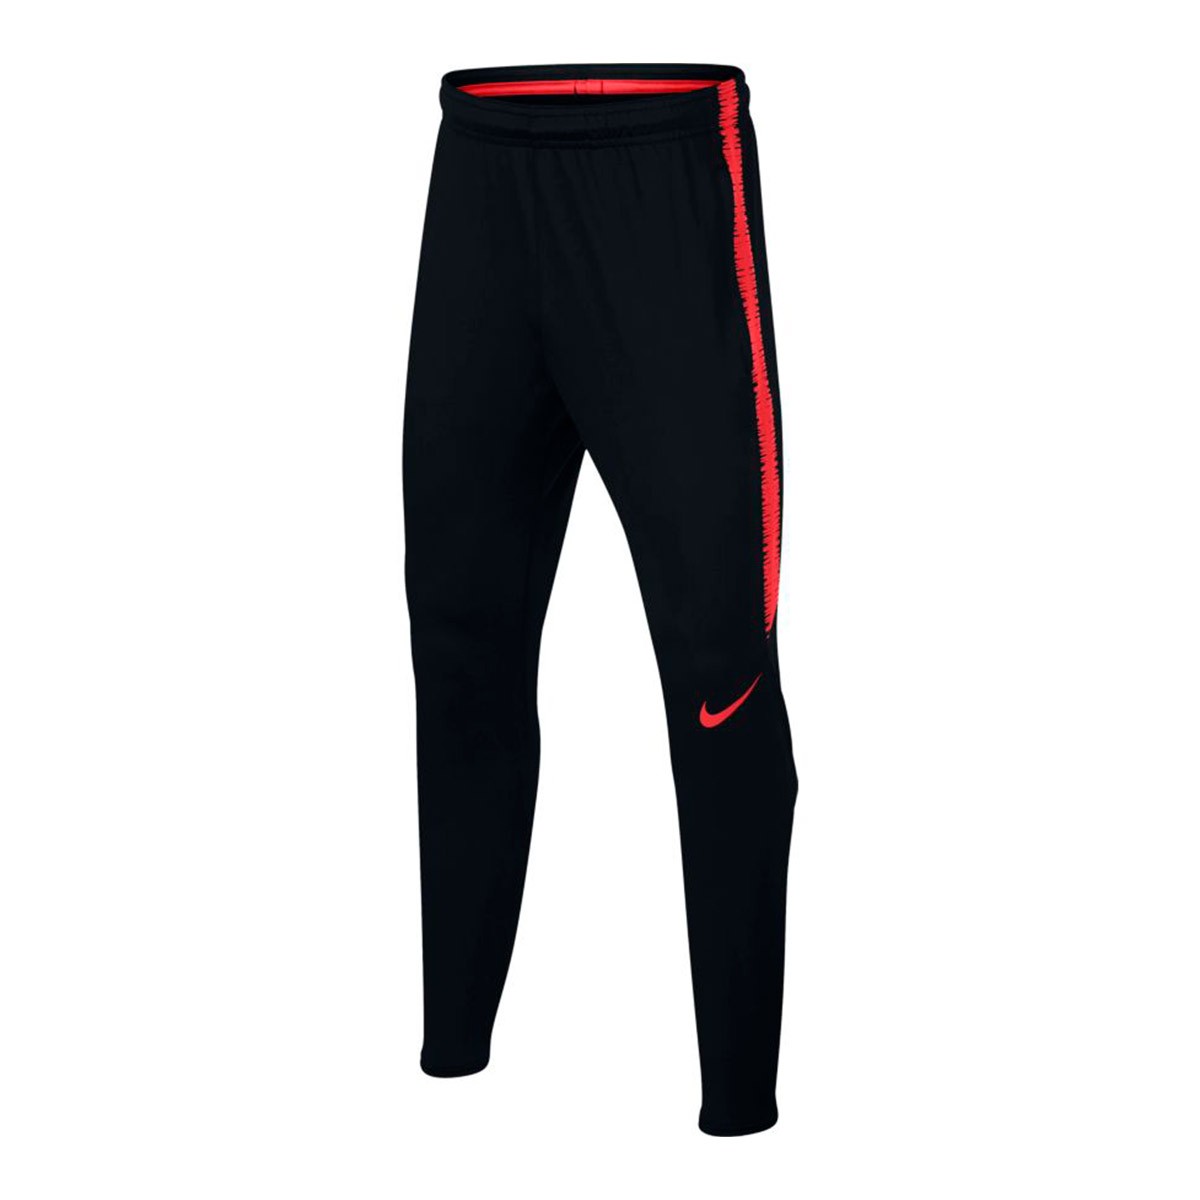 Pantalón largo Nike Dry Squad Niño Black-Light crimson - Tienda de fútbol  Fútbol Emotion